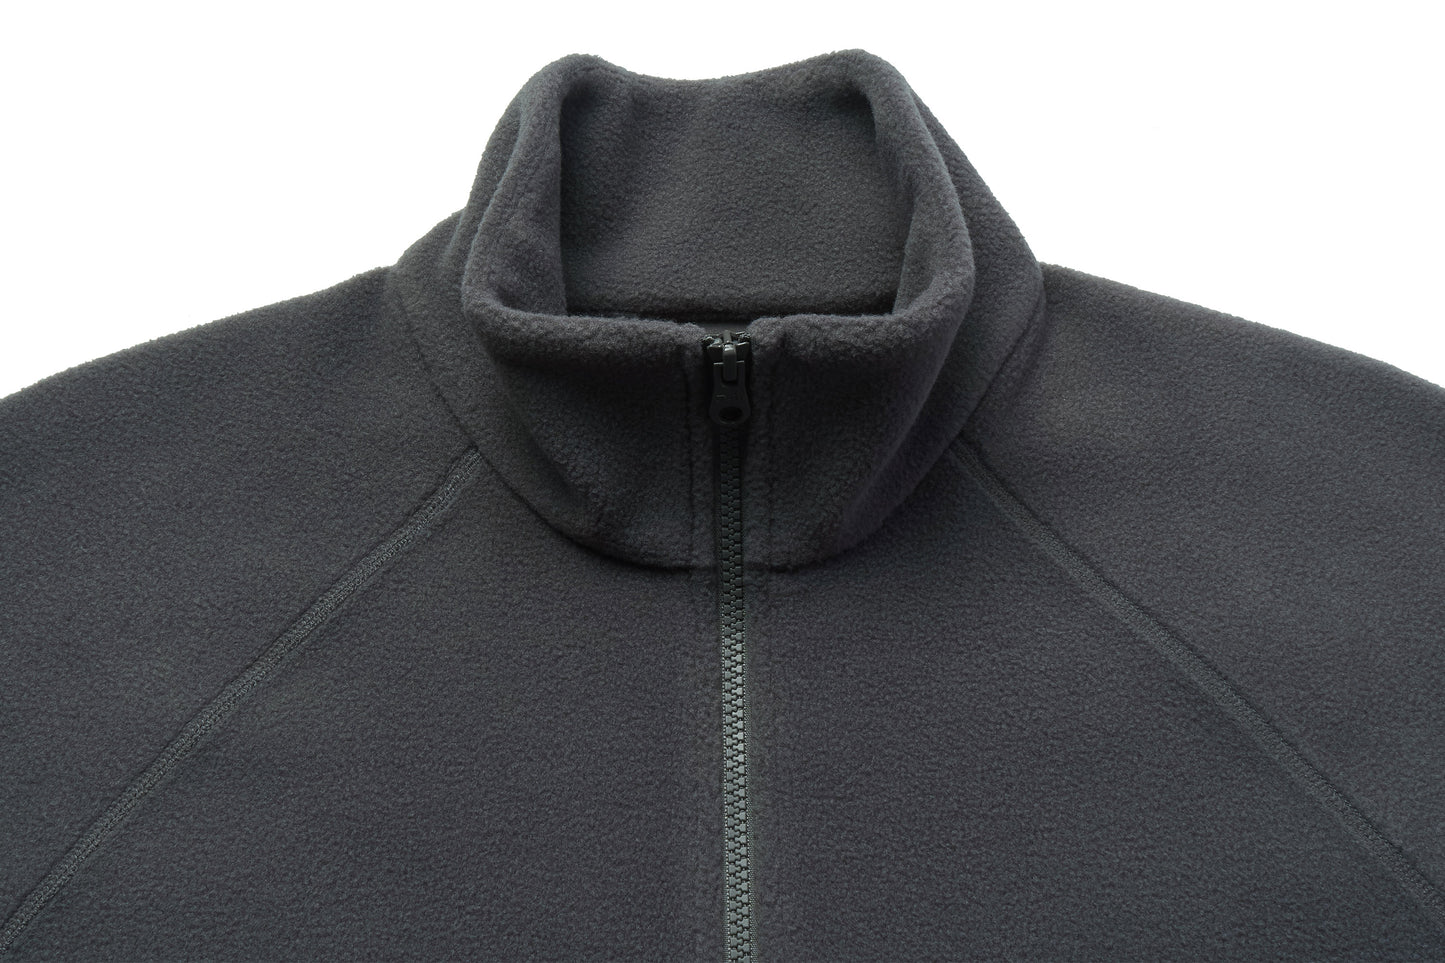 Basics Unisex Half Zip Fleece Top - Dark Charcoal